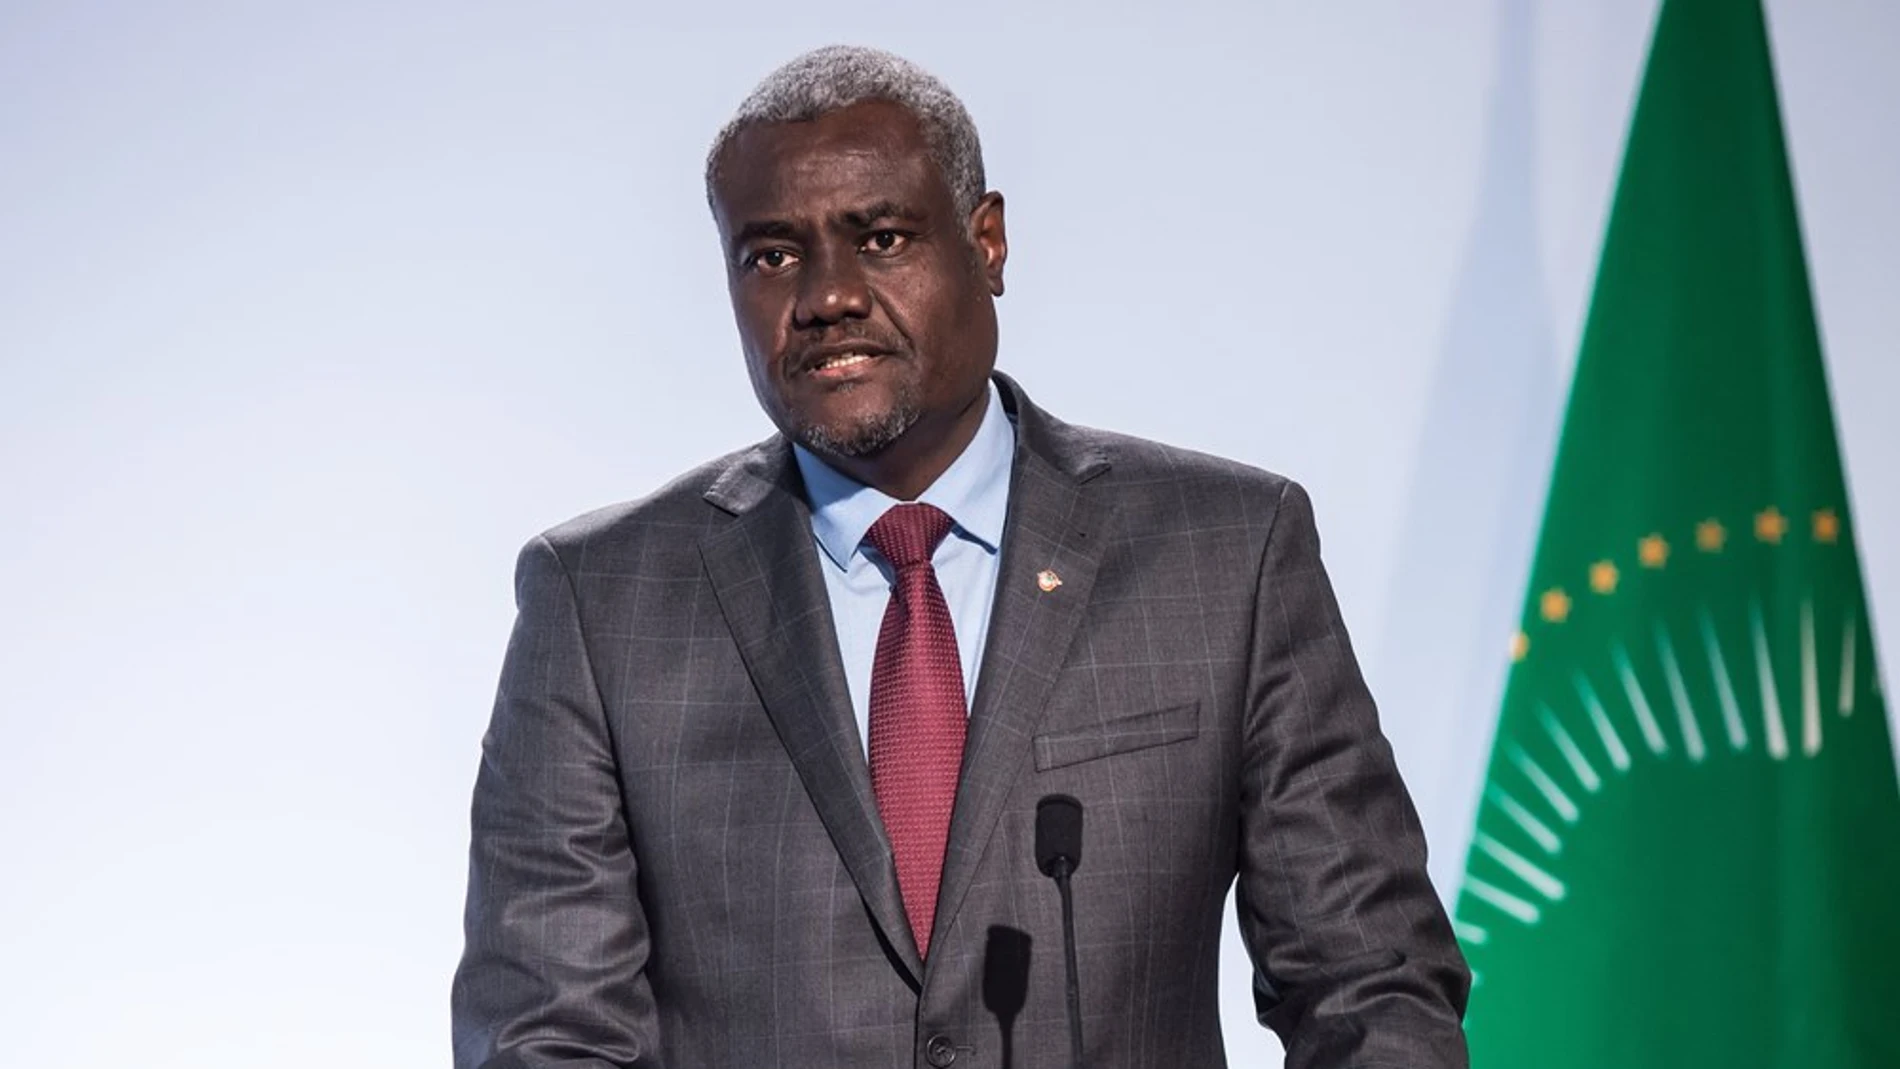 El Presidente de la Comisión de la Unión Africana, Moussa Faki Mahamat